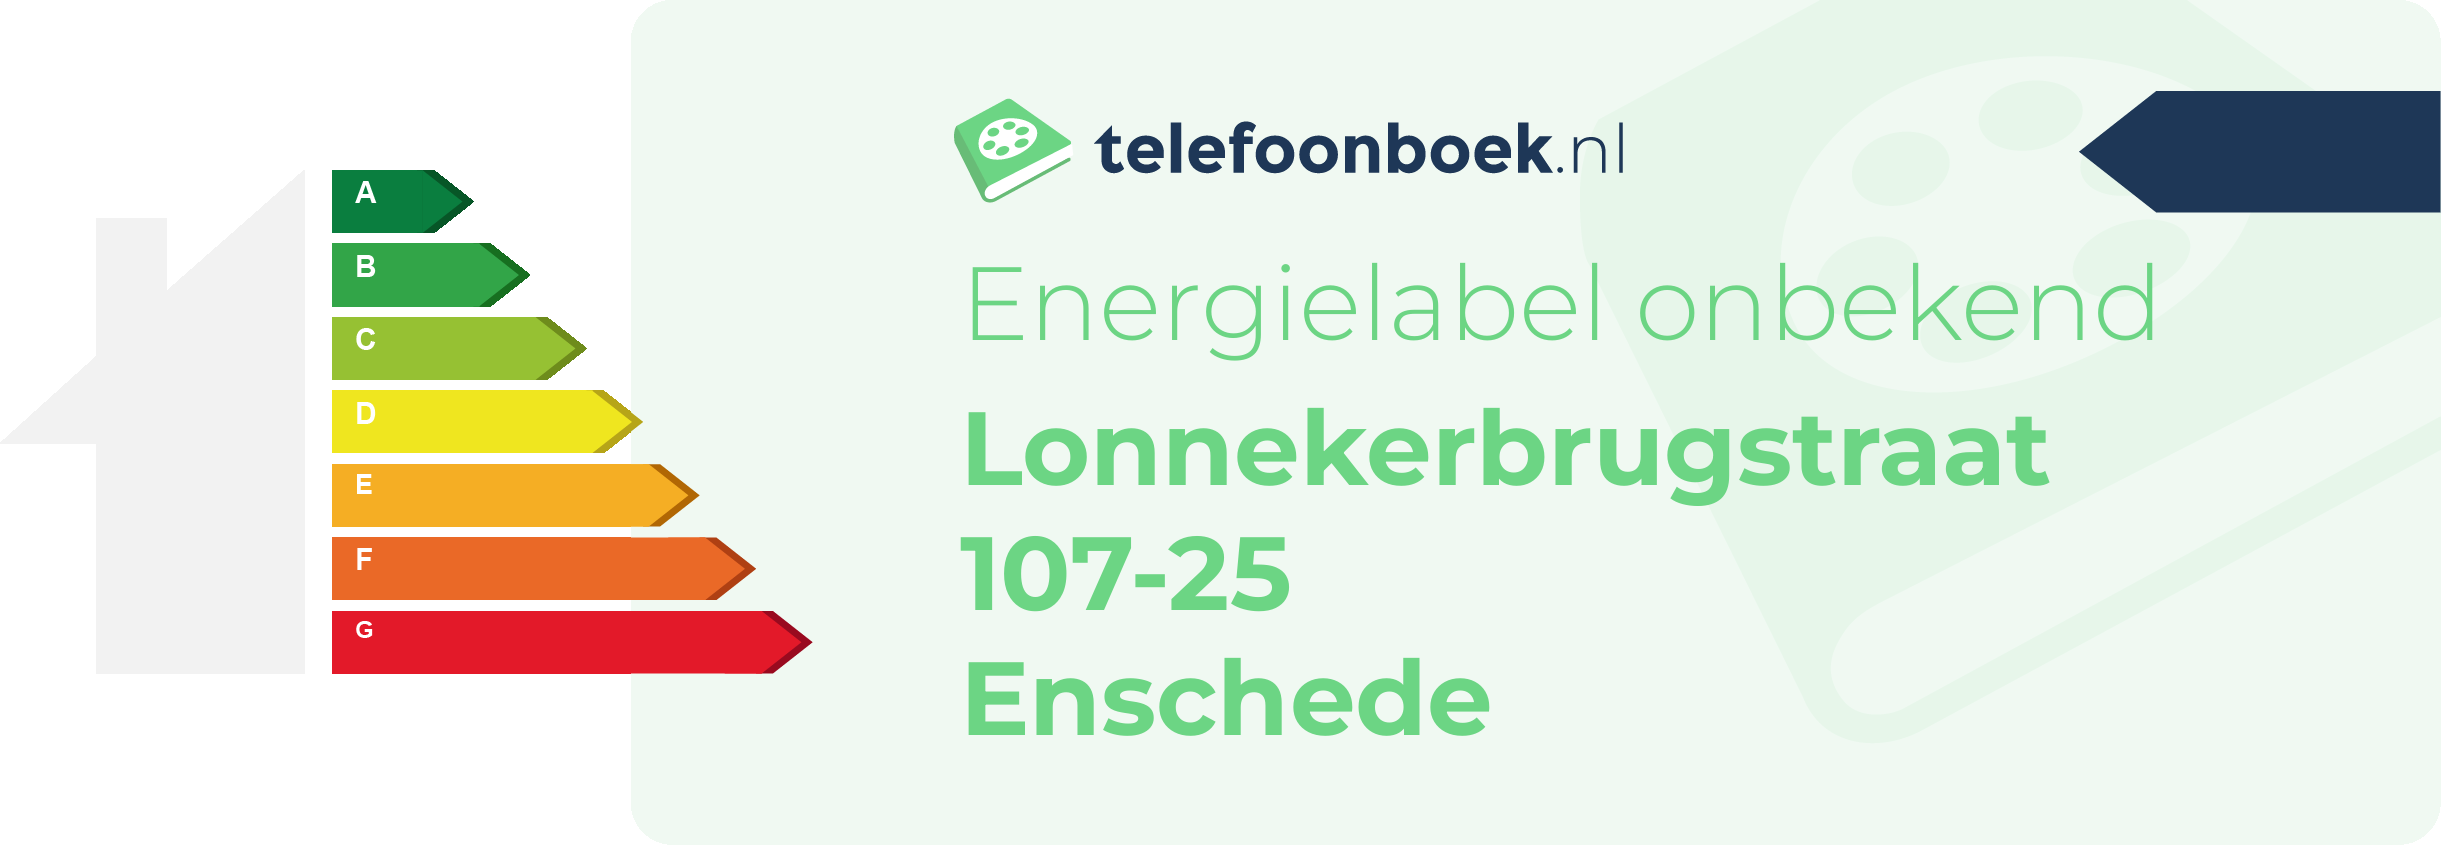 Energielabel Lonnekerbrugstraat 107-25 Enschede